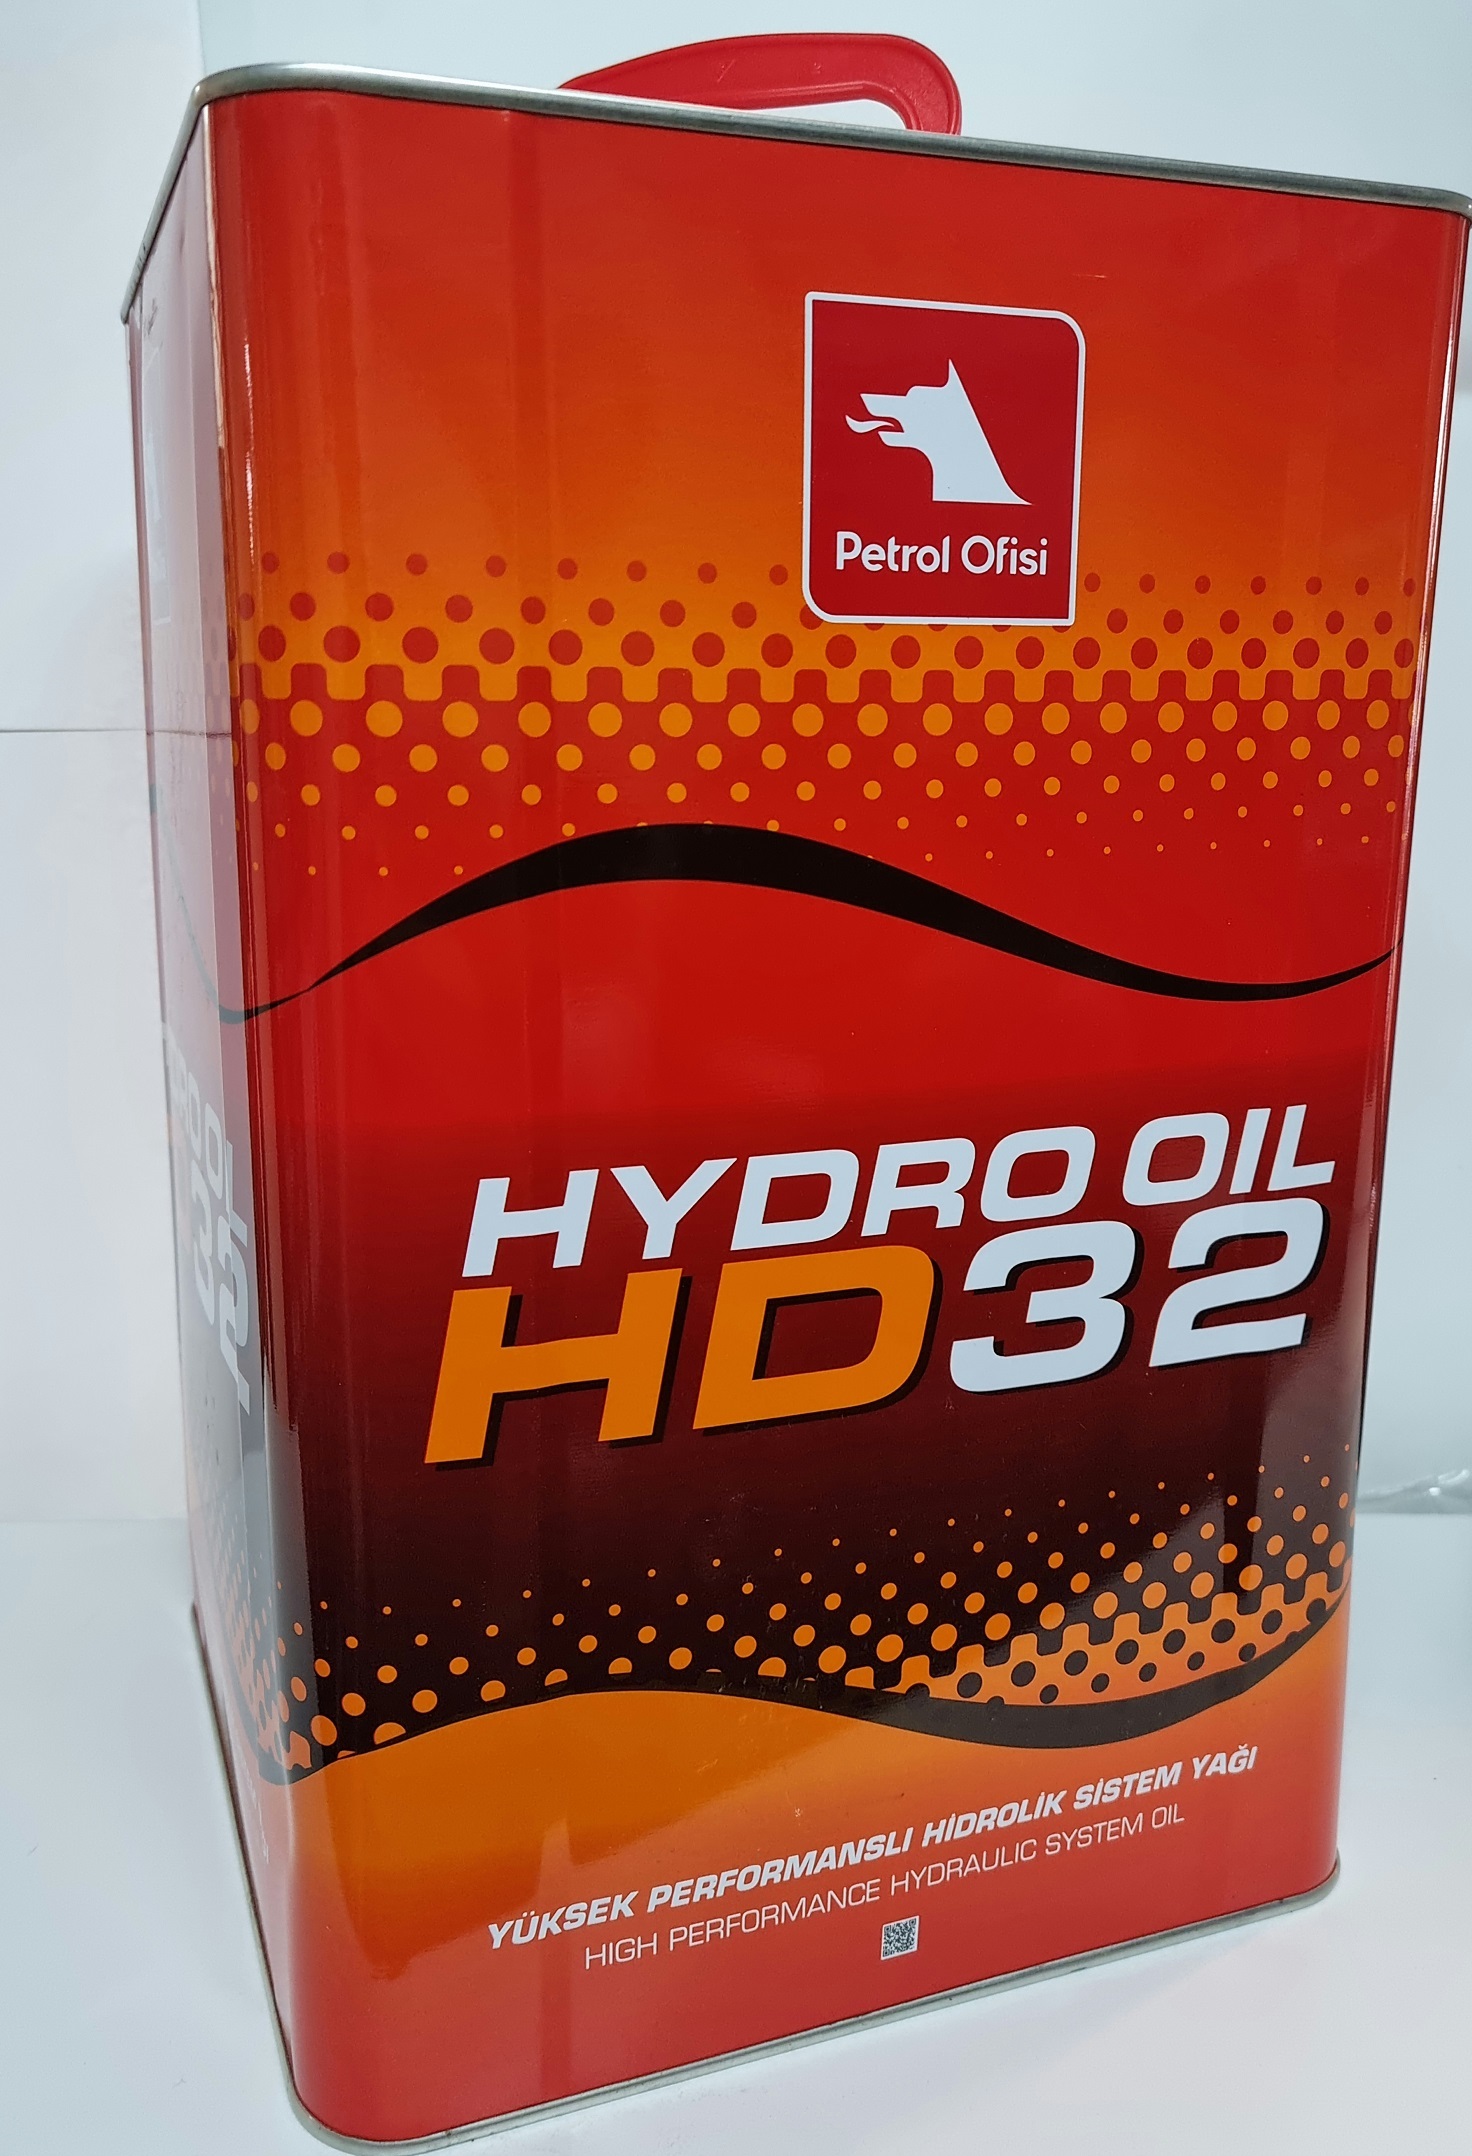 Petrol Ofisi Hydro Oil Hd 32 Hidrolik Sistem Yağı 17 L